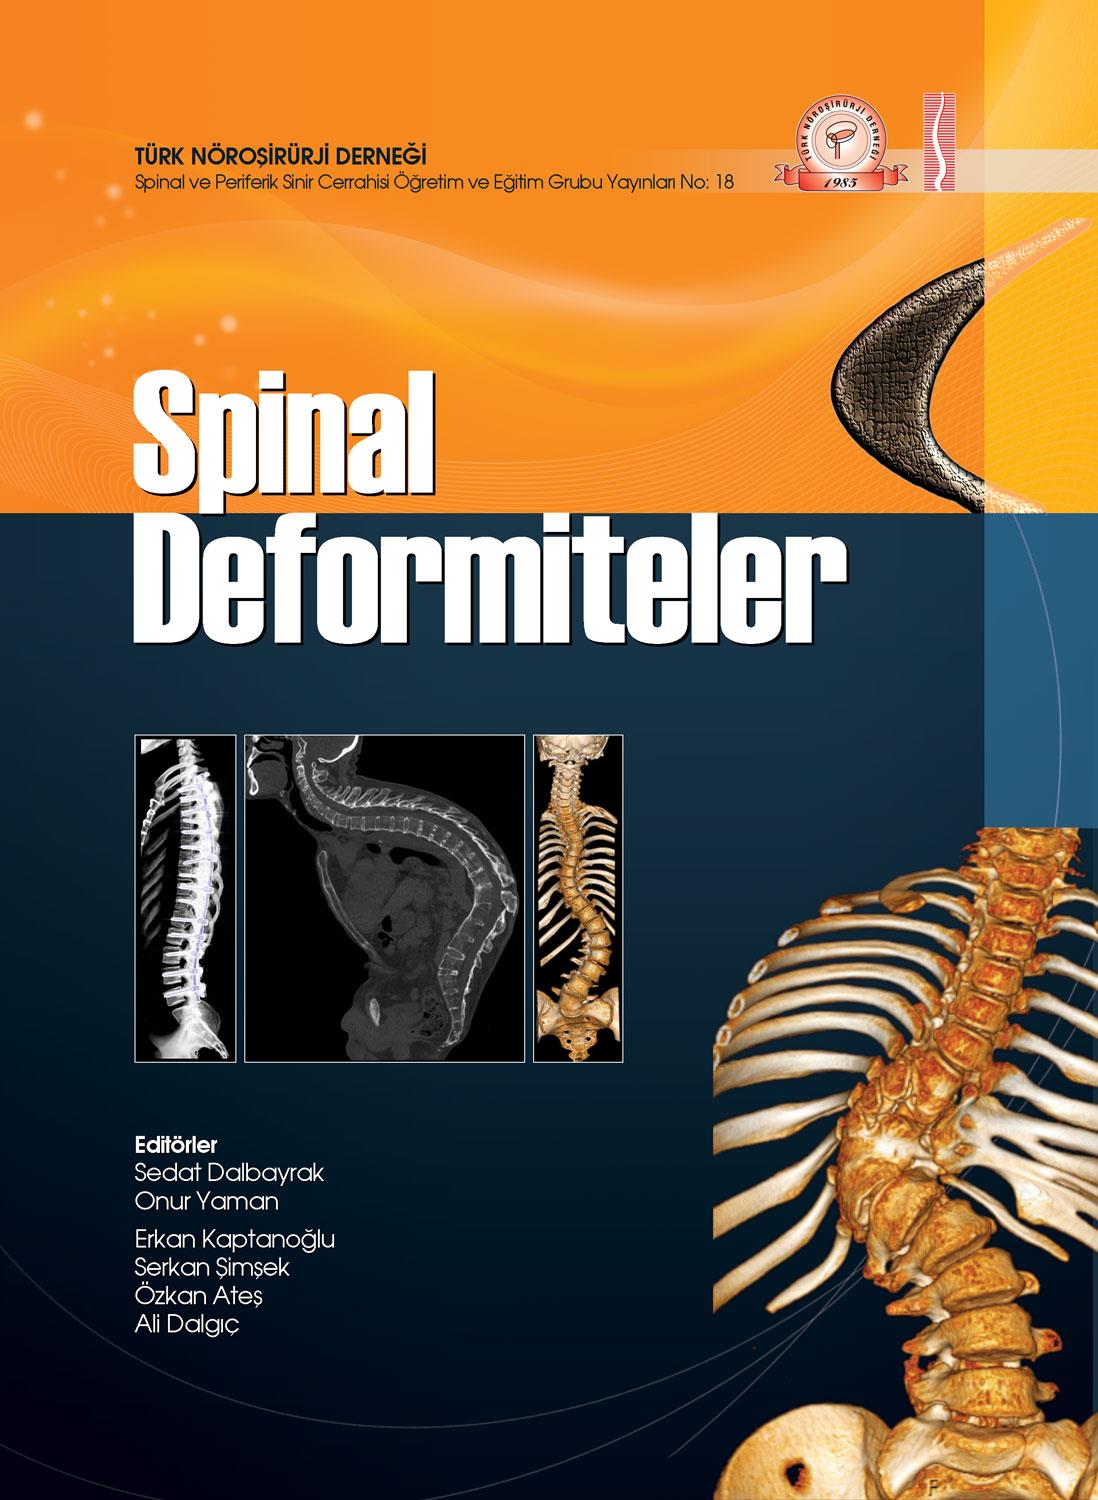 2. Spinal Deformiteler konulu sempozyumumuza bağlantılı olarak hazırlamış olduğumuz kitapla, yerli kaynak eksikliği olan deformite konusunda yararlı olabilecek basılı bir kaynak yaratmaya çalıştık.